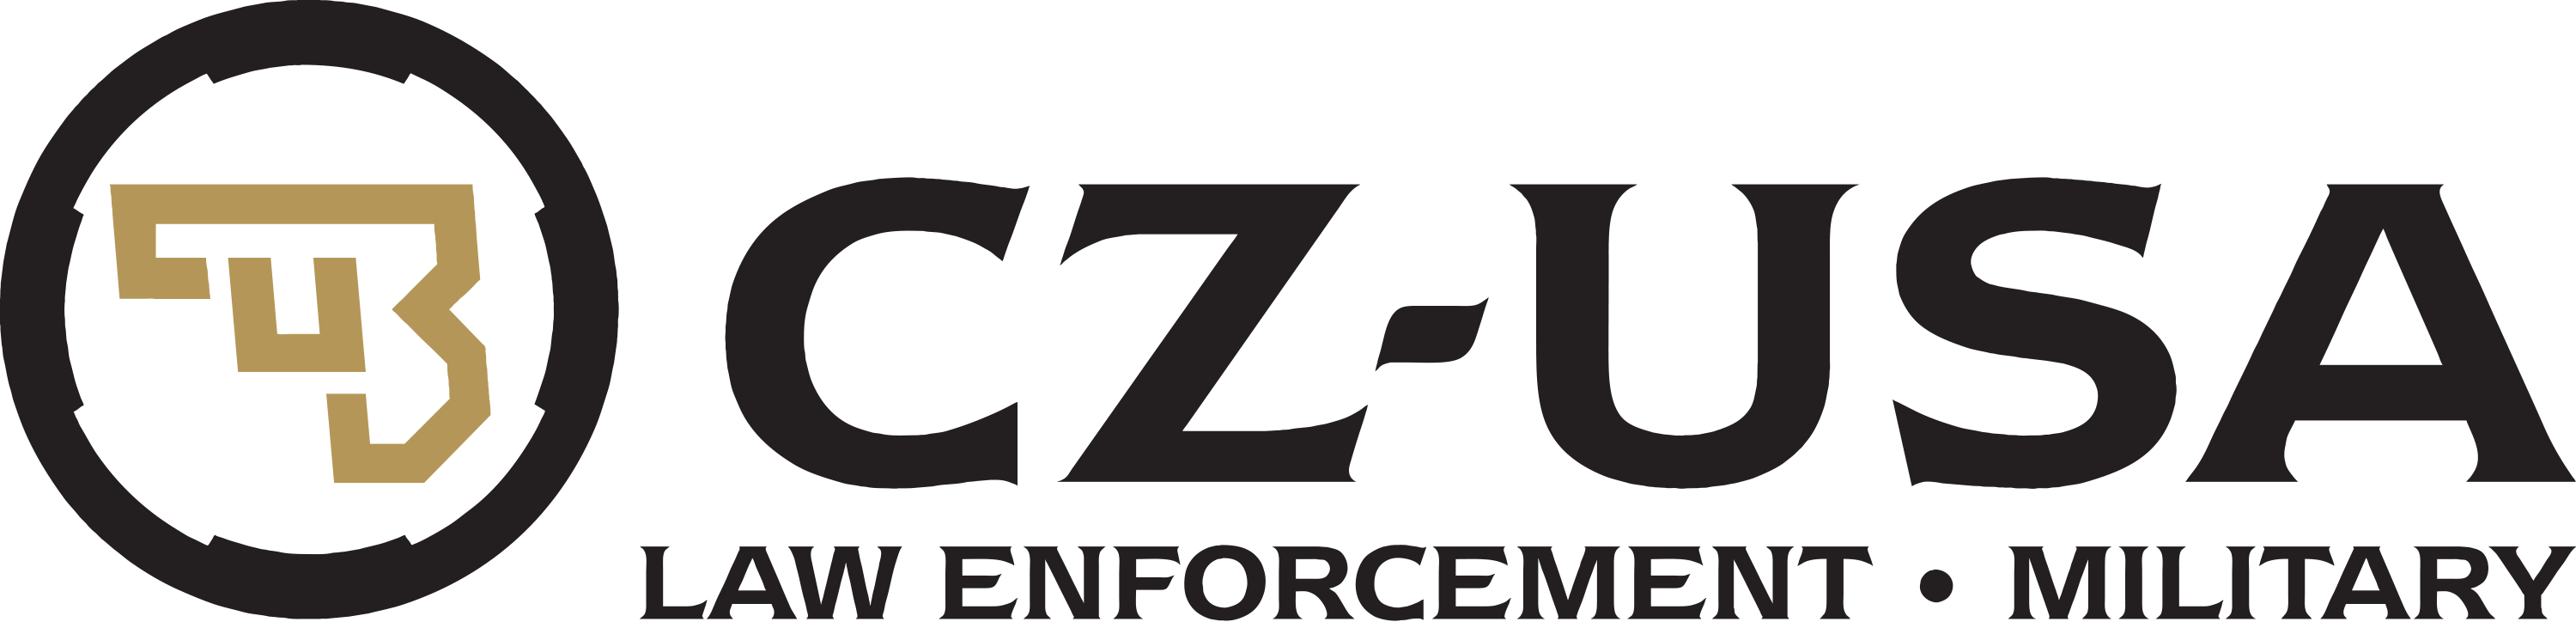 CZ Arms Logo - CZ-USA LE/MIL | CZ-USA Law Enforcement & Military Program